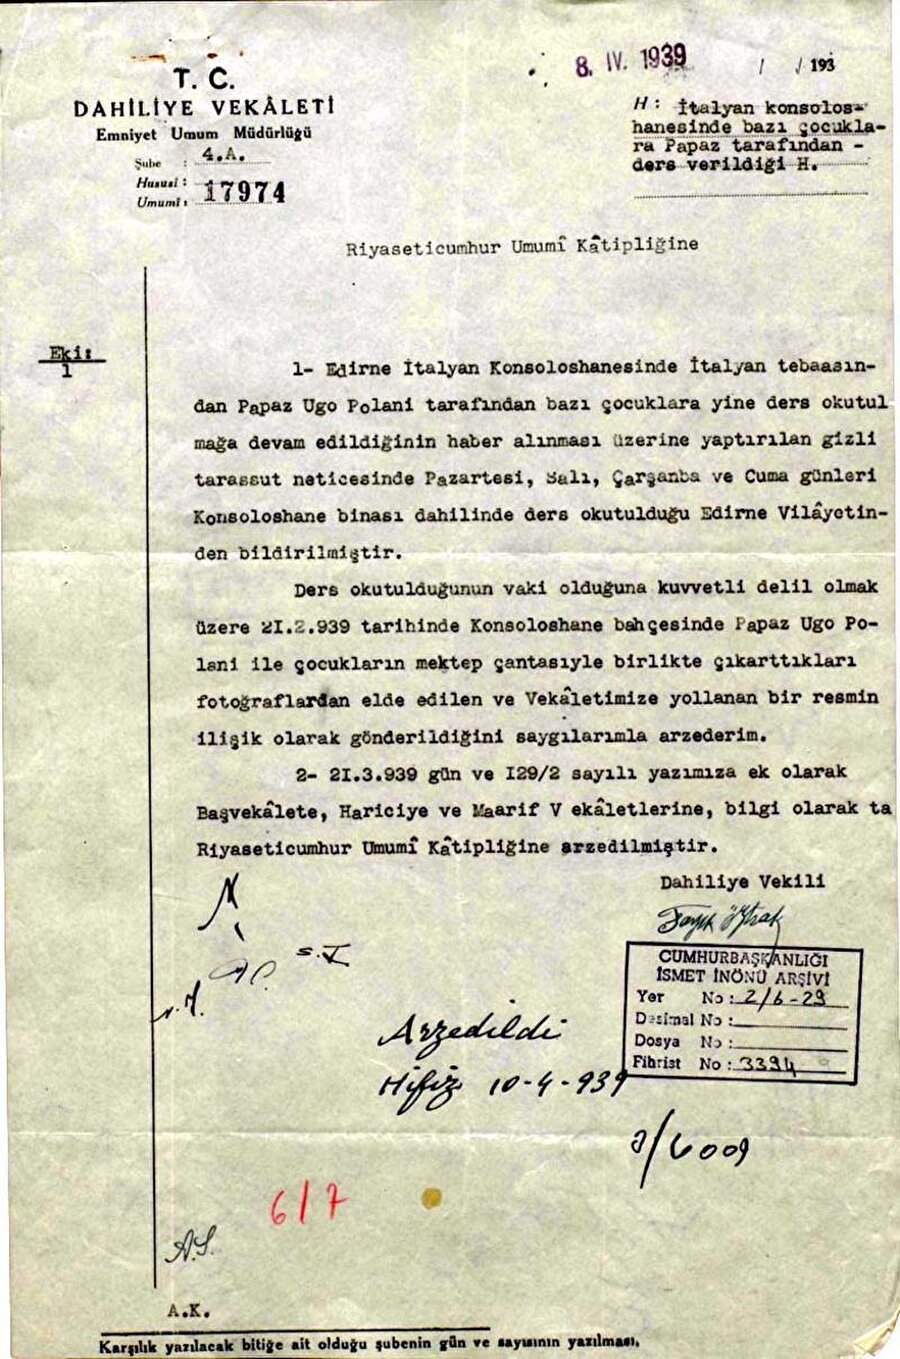  İçişleri Bakanlığı’ndan Cumhurbaşkanlığı’na 8 Nisan 1939’da gönderilen bu yazı devletin dinî eğitim konusunda sadece Türk vatandaşlarını değil, Türkiye’de yaşayan yabancıları da takip ettiğini gösteriyor.

                                    
                                